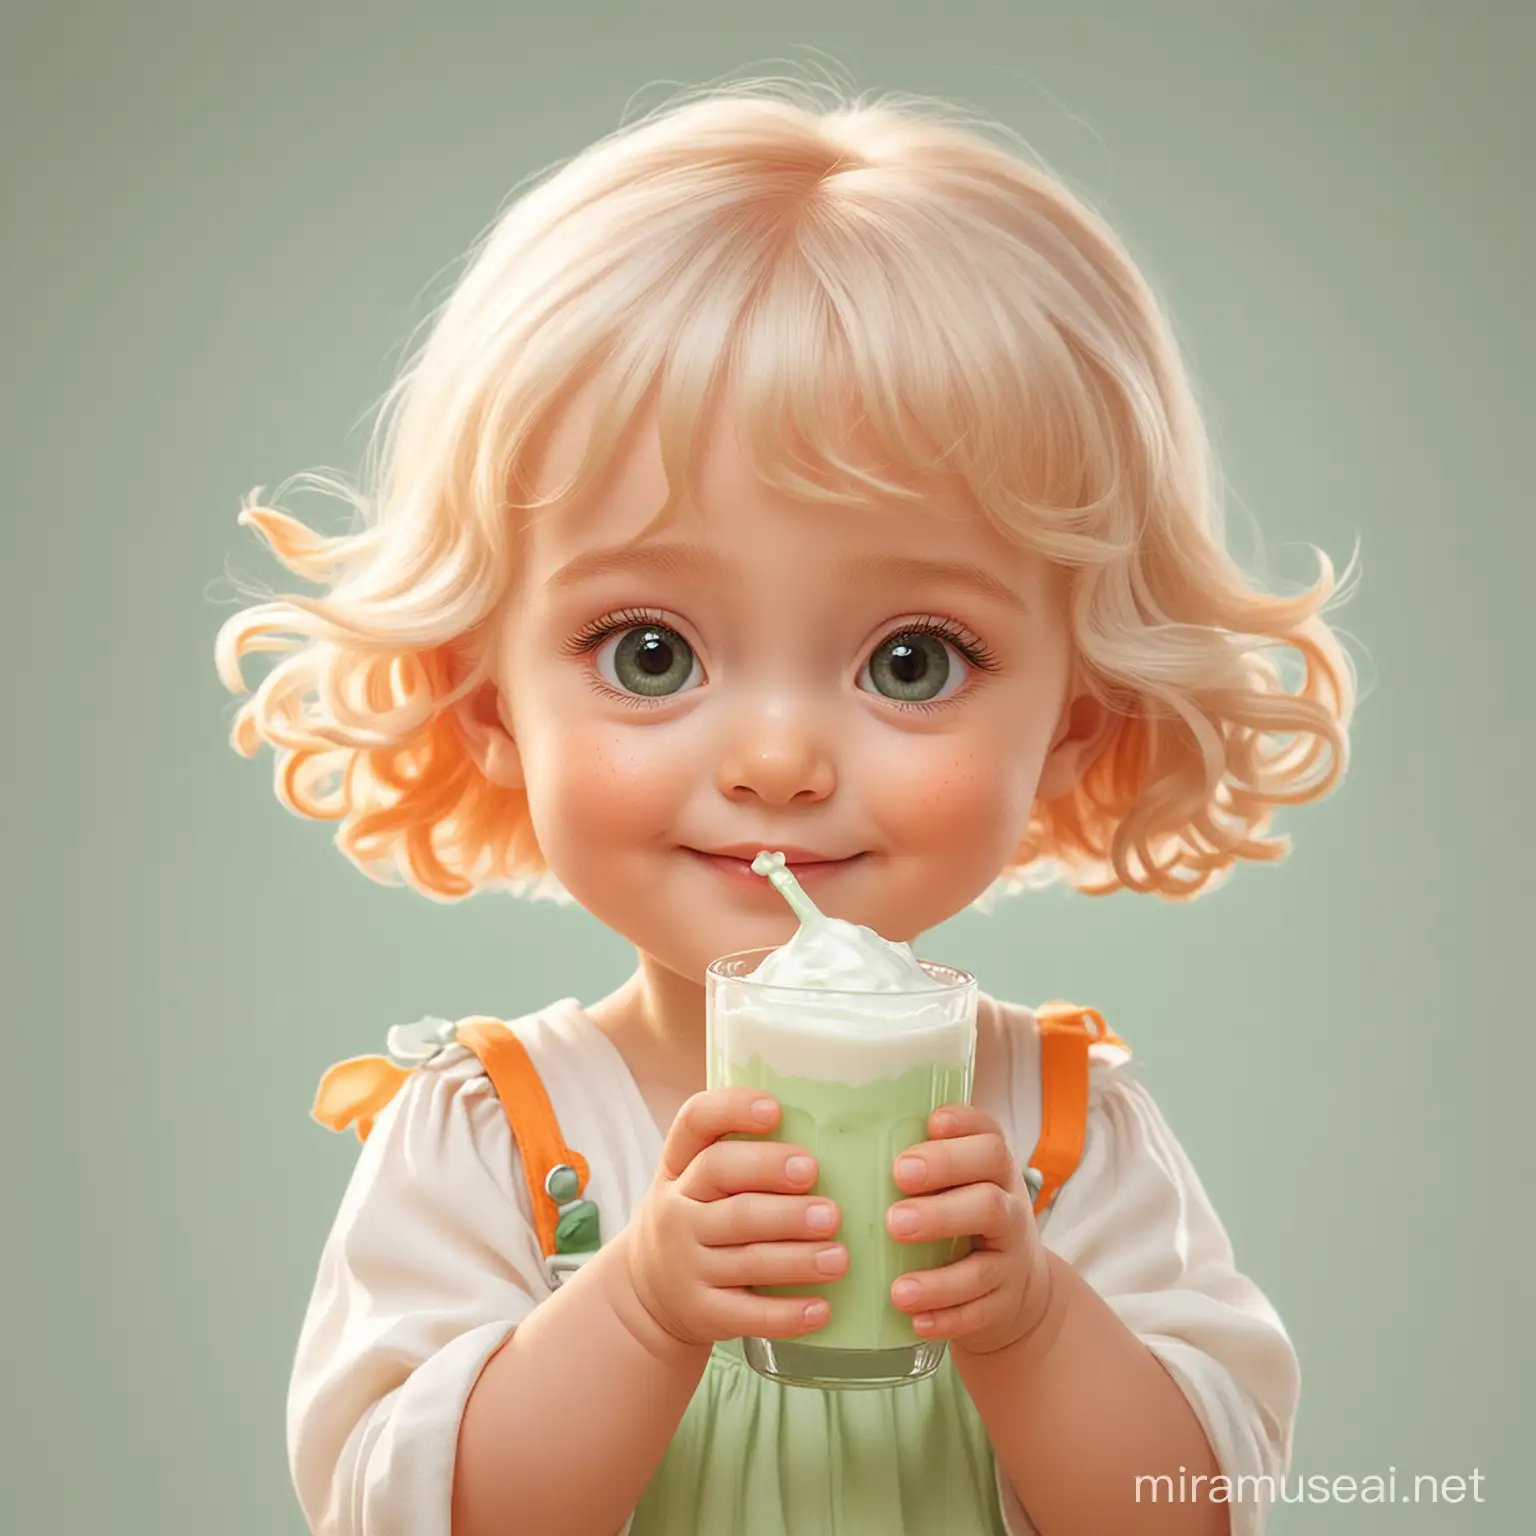 Маленький ребёнок держит в руках кефир. Мультипликационный стиль Disney. Пастельные цвета: оранжевый, зелёный, белый.